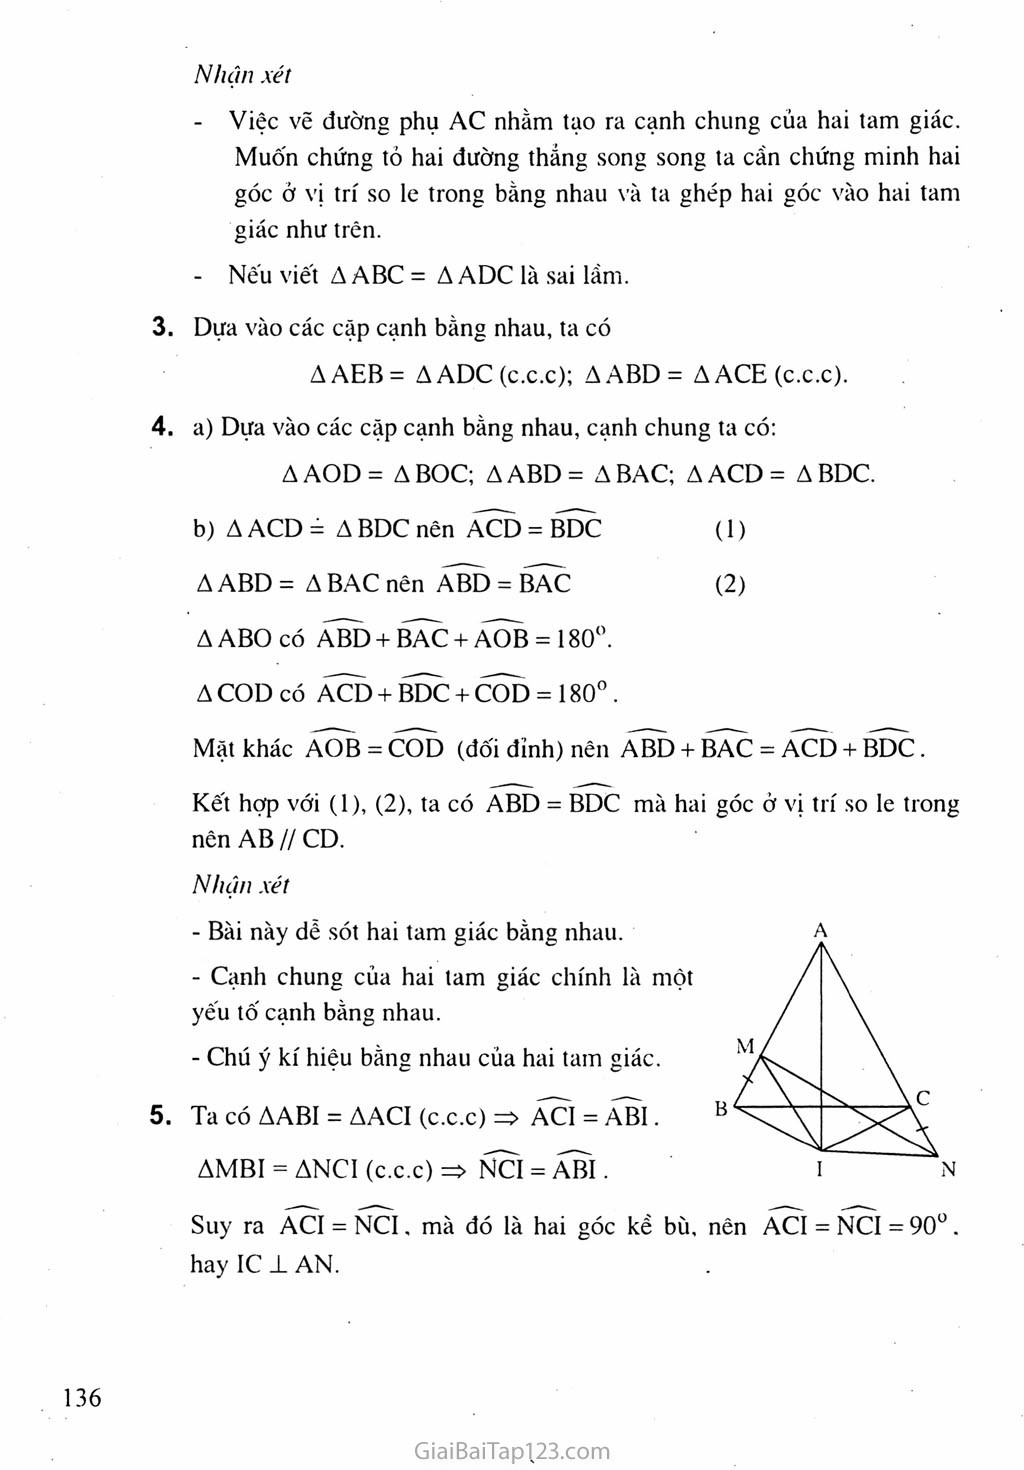 Bài 3. Trường hợp bằng nhau thứ nhất của tam giác: cạnh - cạnh - cạnh (c.c.c) trang 6